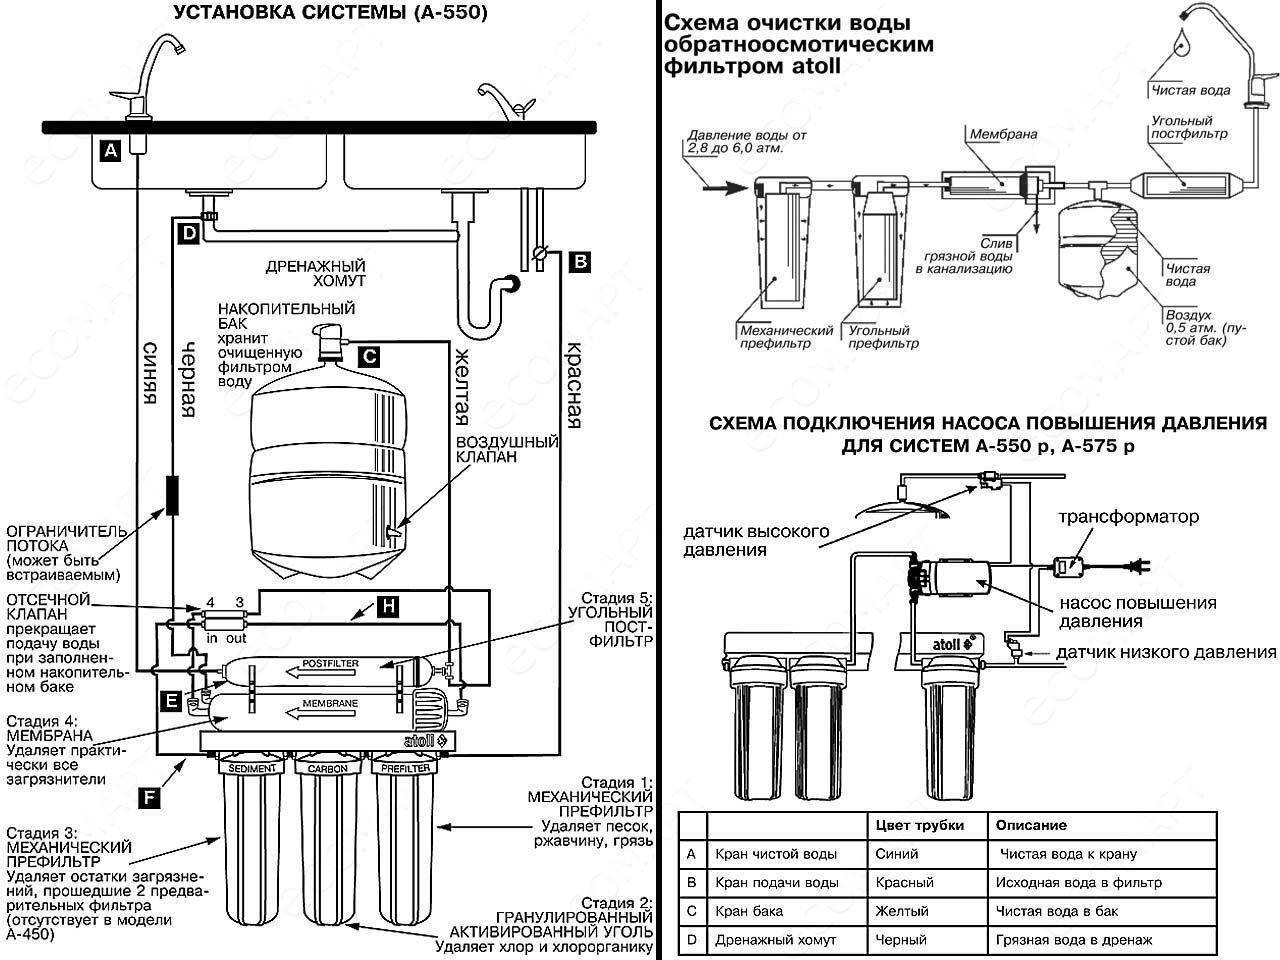 Минерализатор в фильтре – нужен или ну его?
минерализатор в фильтре – нужен или ну его?